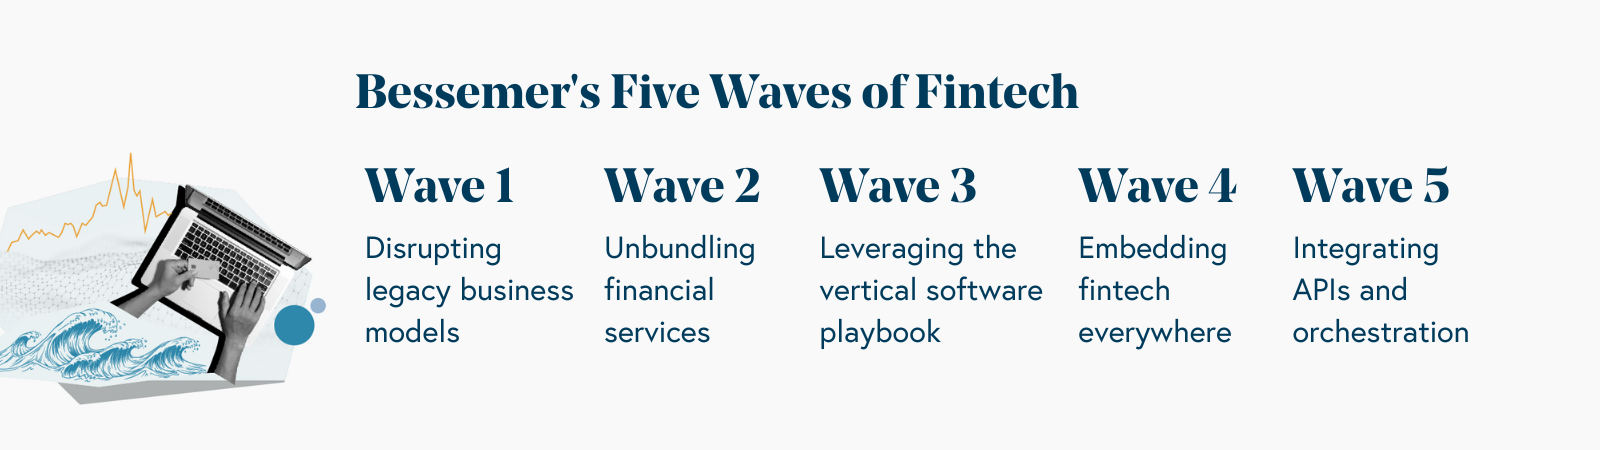 Bessemer's Five Waves of Fintech 